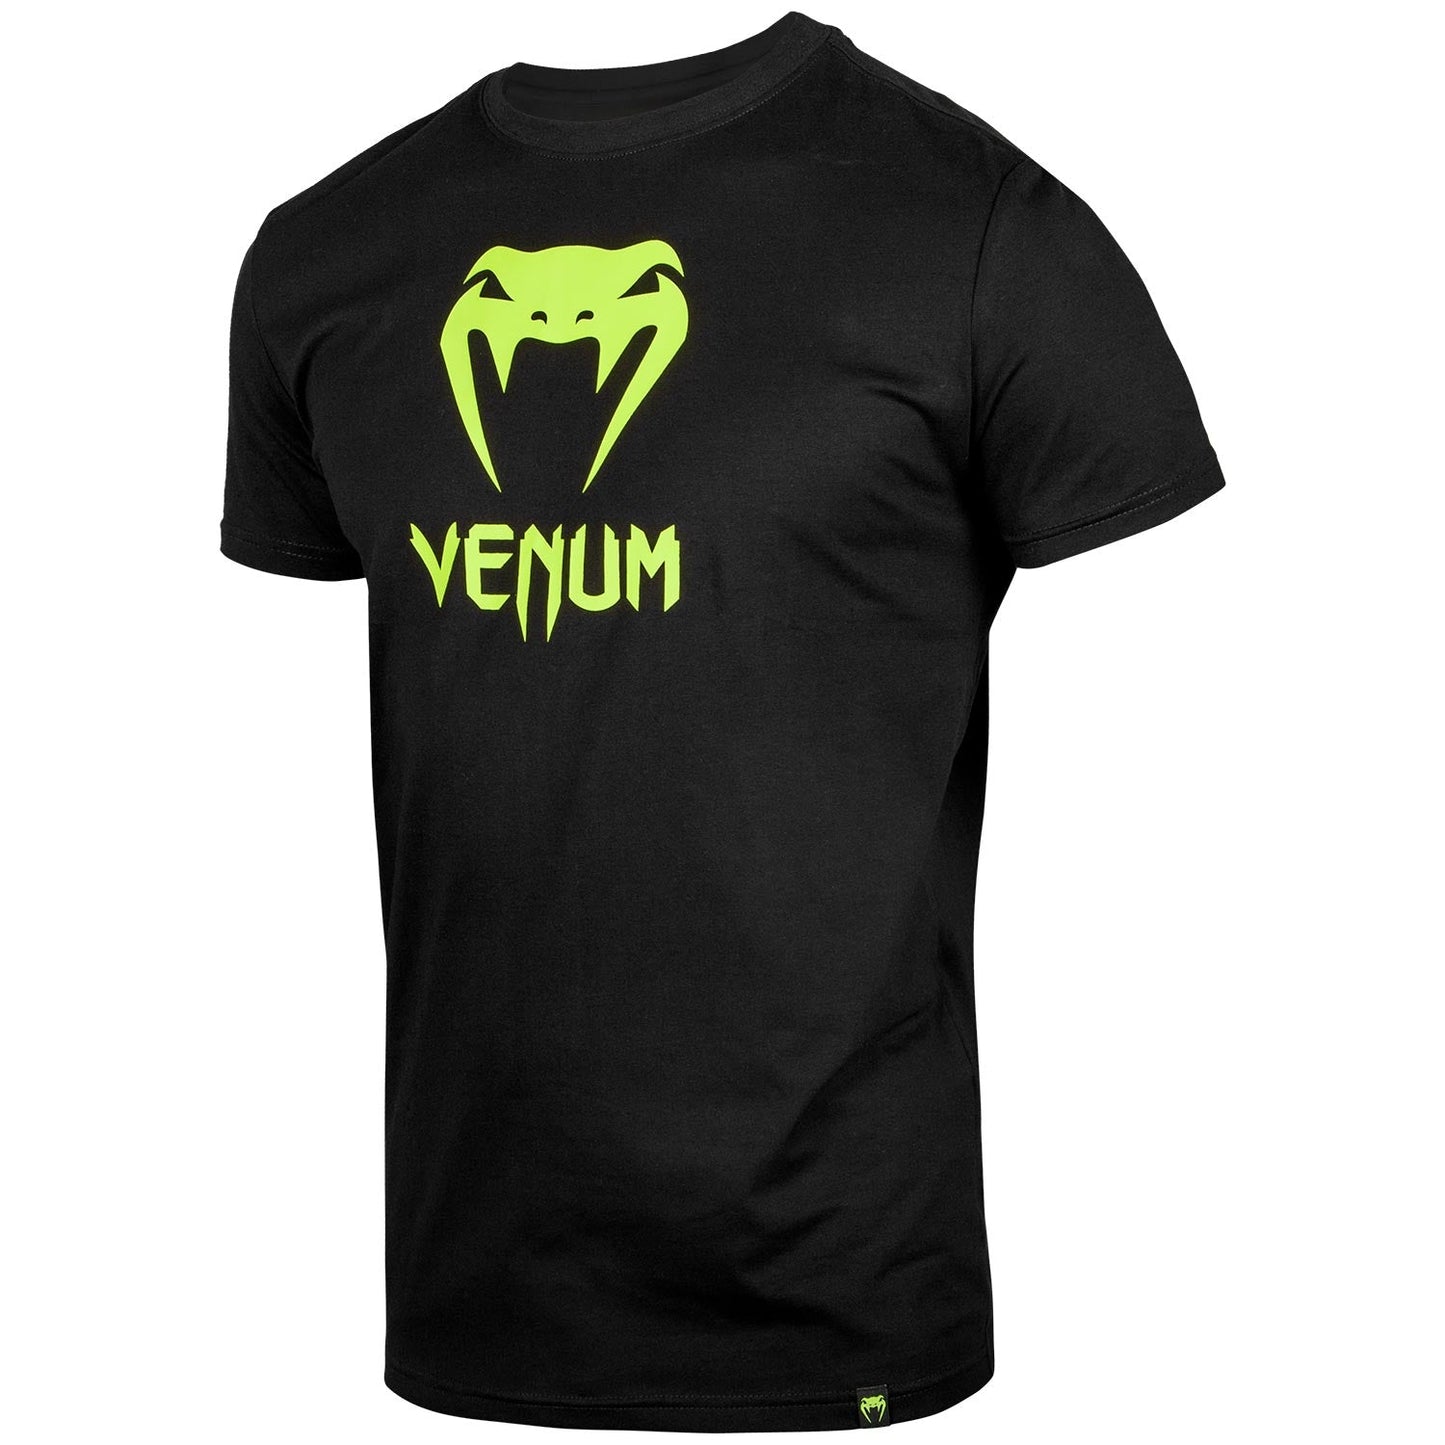 Venum Classic T-shirt - Black/Neo Yellow